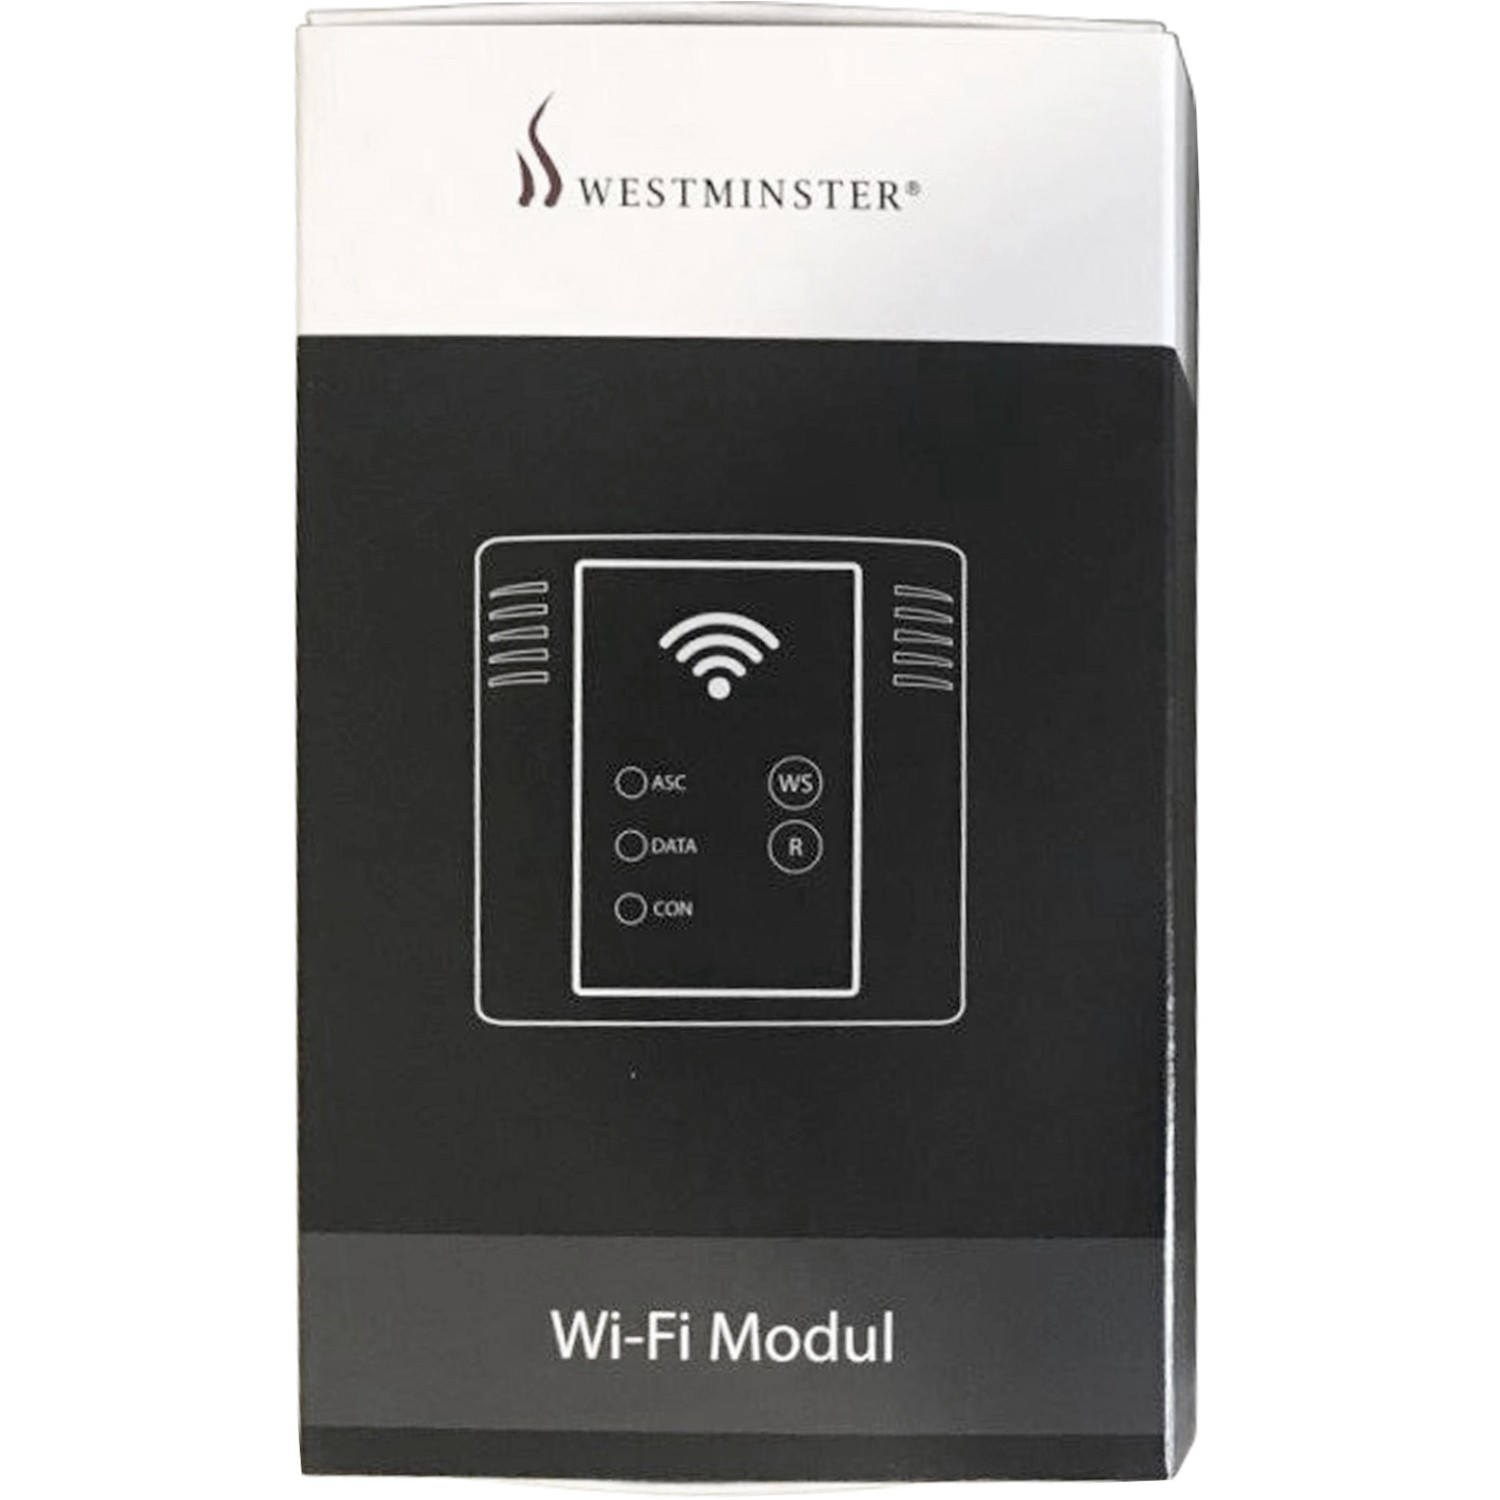 Westminster WiFi Modul für Pelletofen Quattro günstig online kaufen